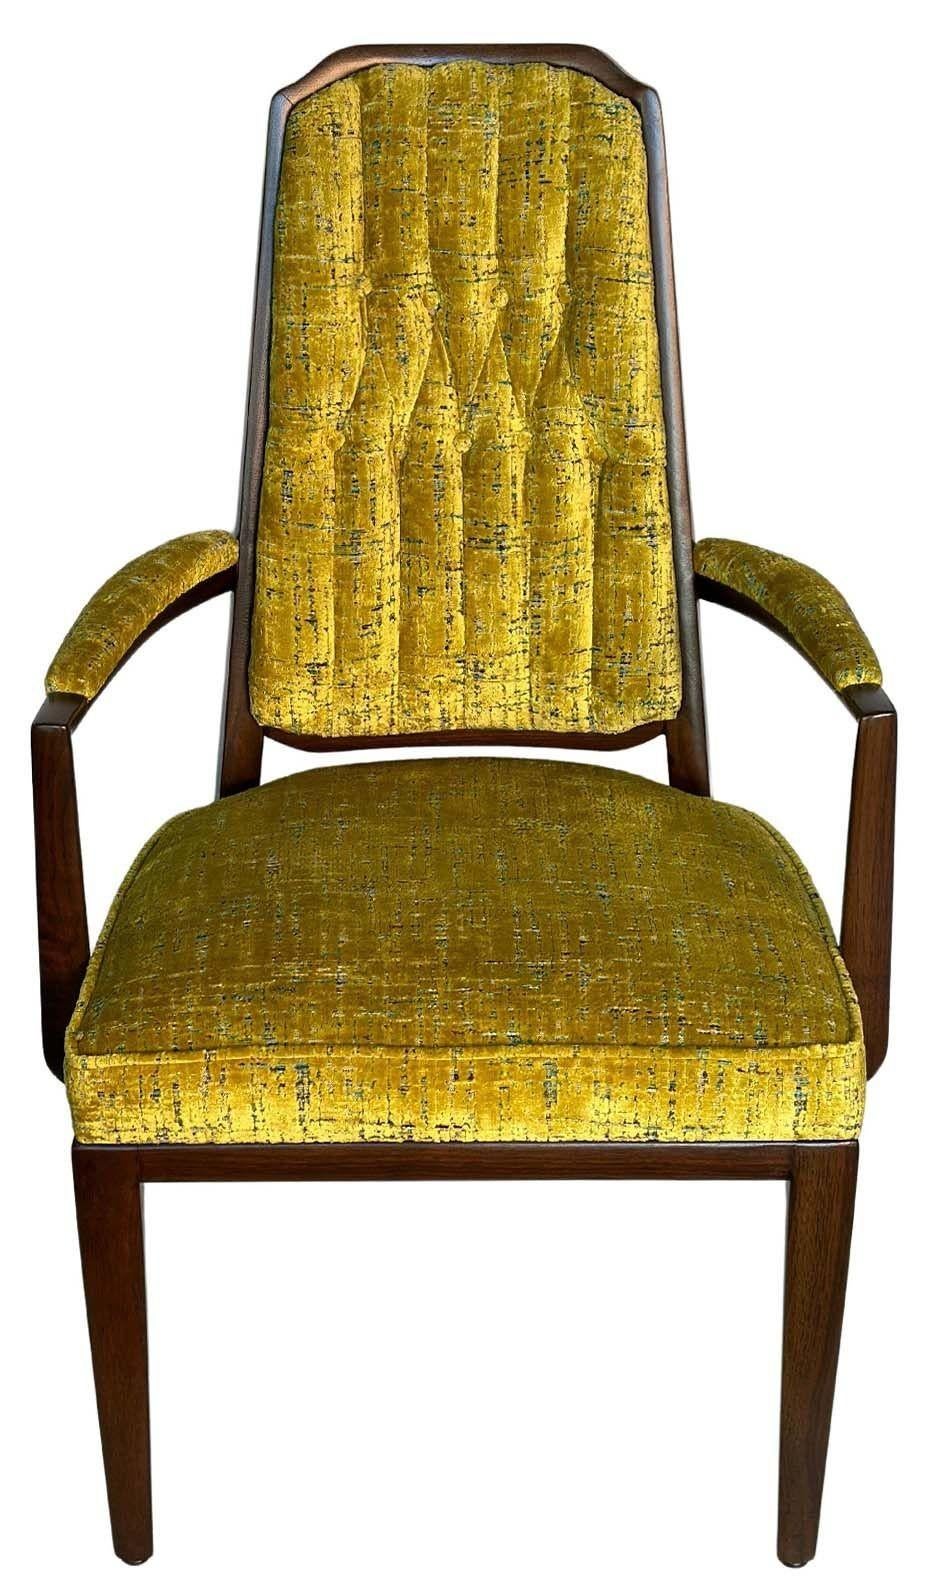 Vintage set de dix chaises par Monteverdi-Young, made in USA, c. 1950's. L'ensemble se compose de huit chaises d'appoint et de deux fauteuils, chacun étant nouvellement recouvert d'un tissu unique vert tendre/moutarde et d'un cadre de chaise en